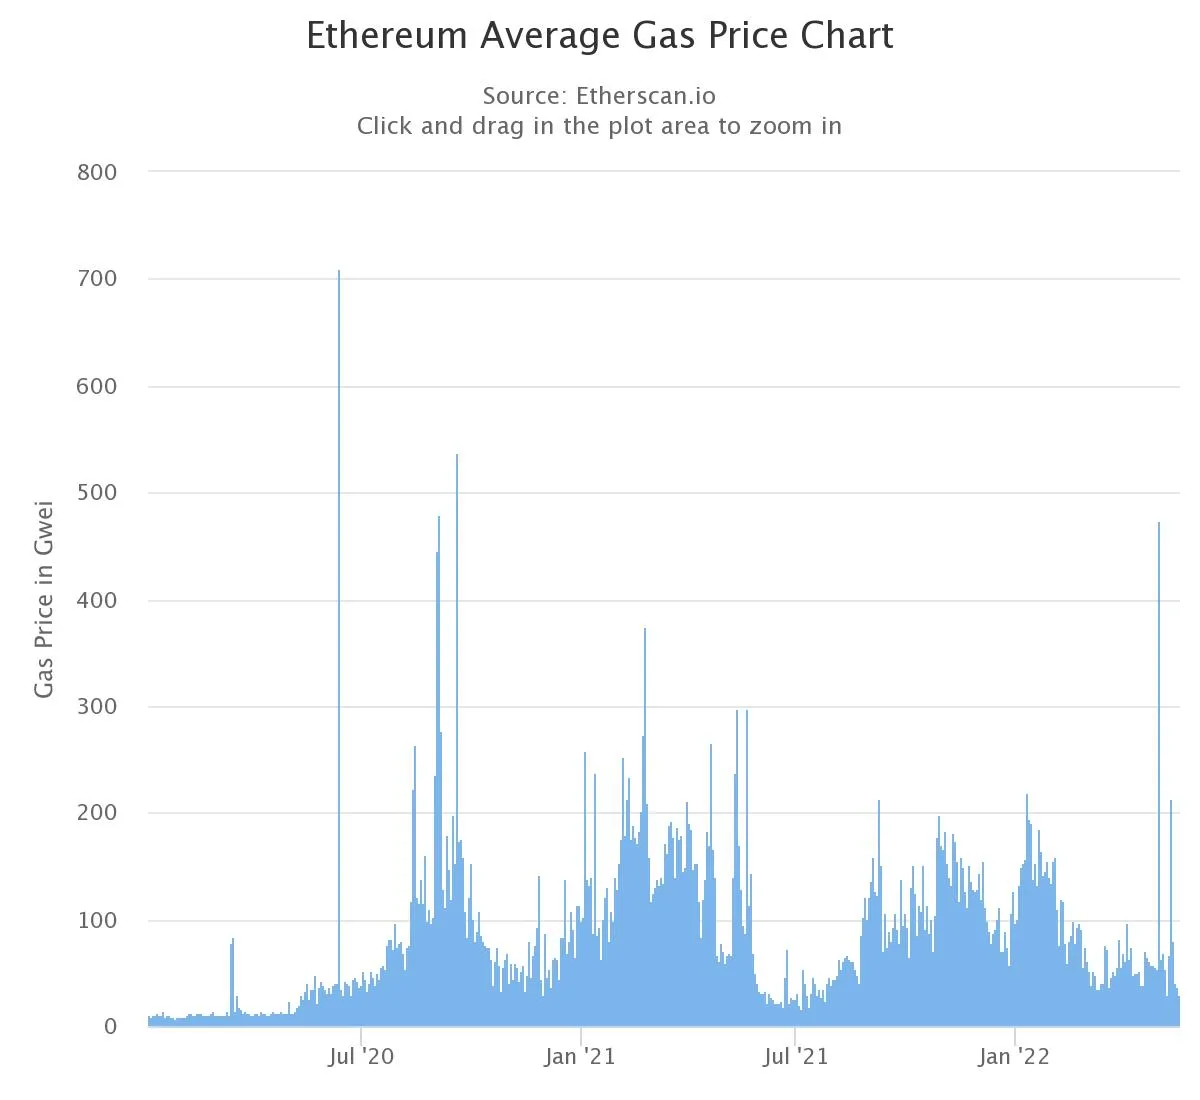 Tasas medias de gas en Ethereum desde el 2 de enero de 2020 hasta la actualidad. Fuente: Etherscan.